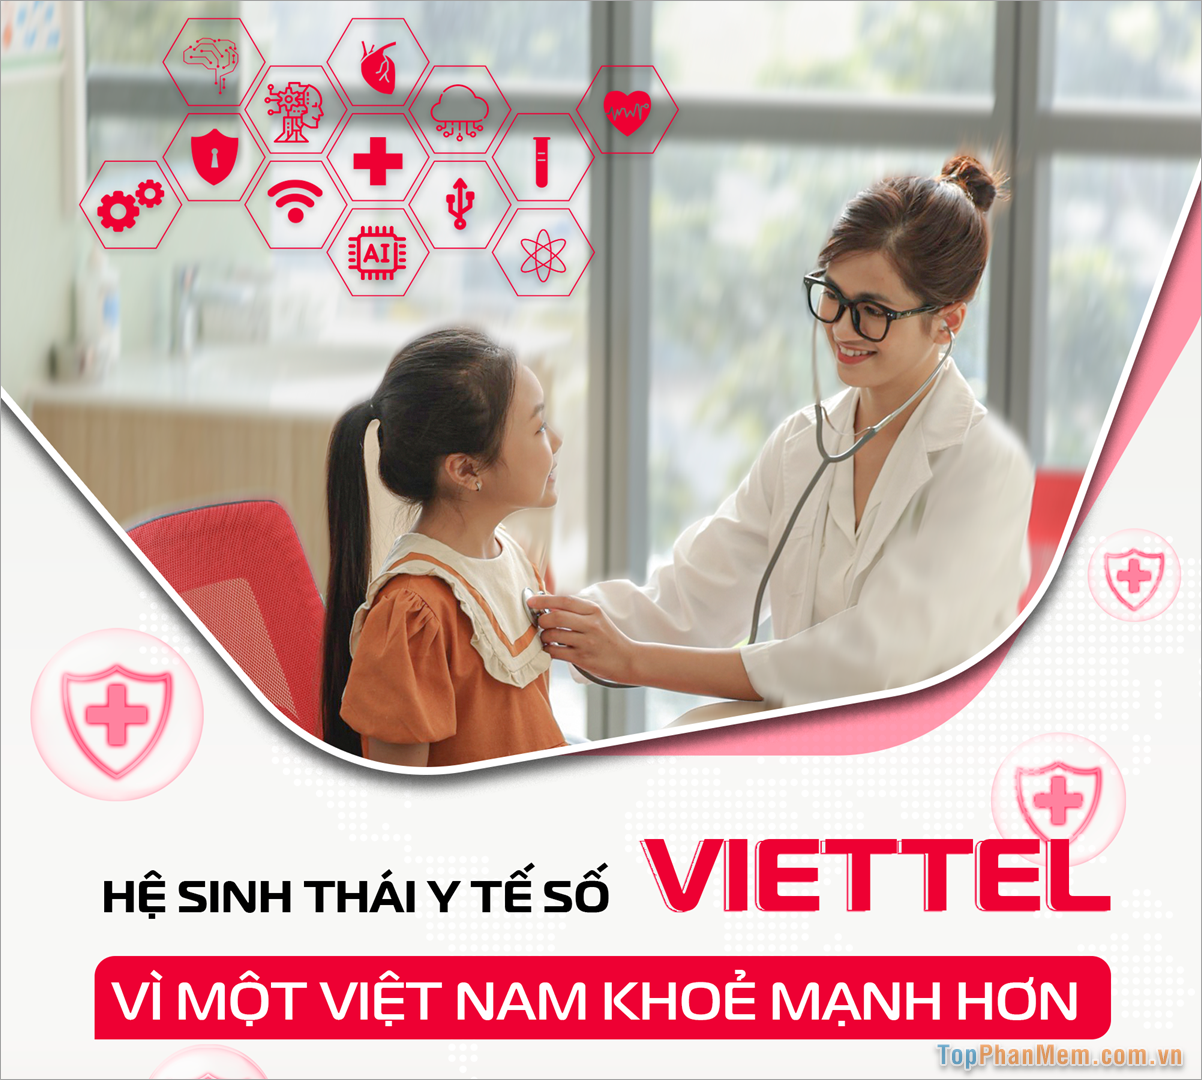 Viettel vHIS – Phần mềm quản lý bệnh nhân chi phí thấp